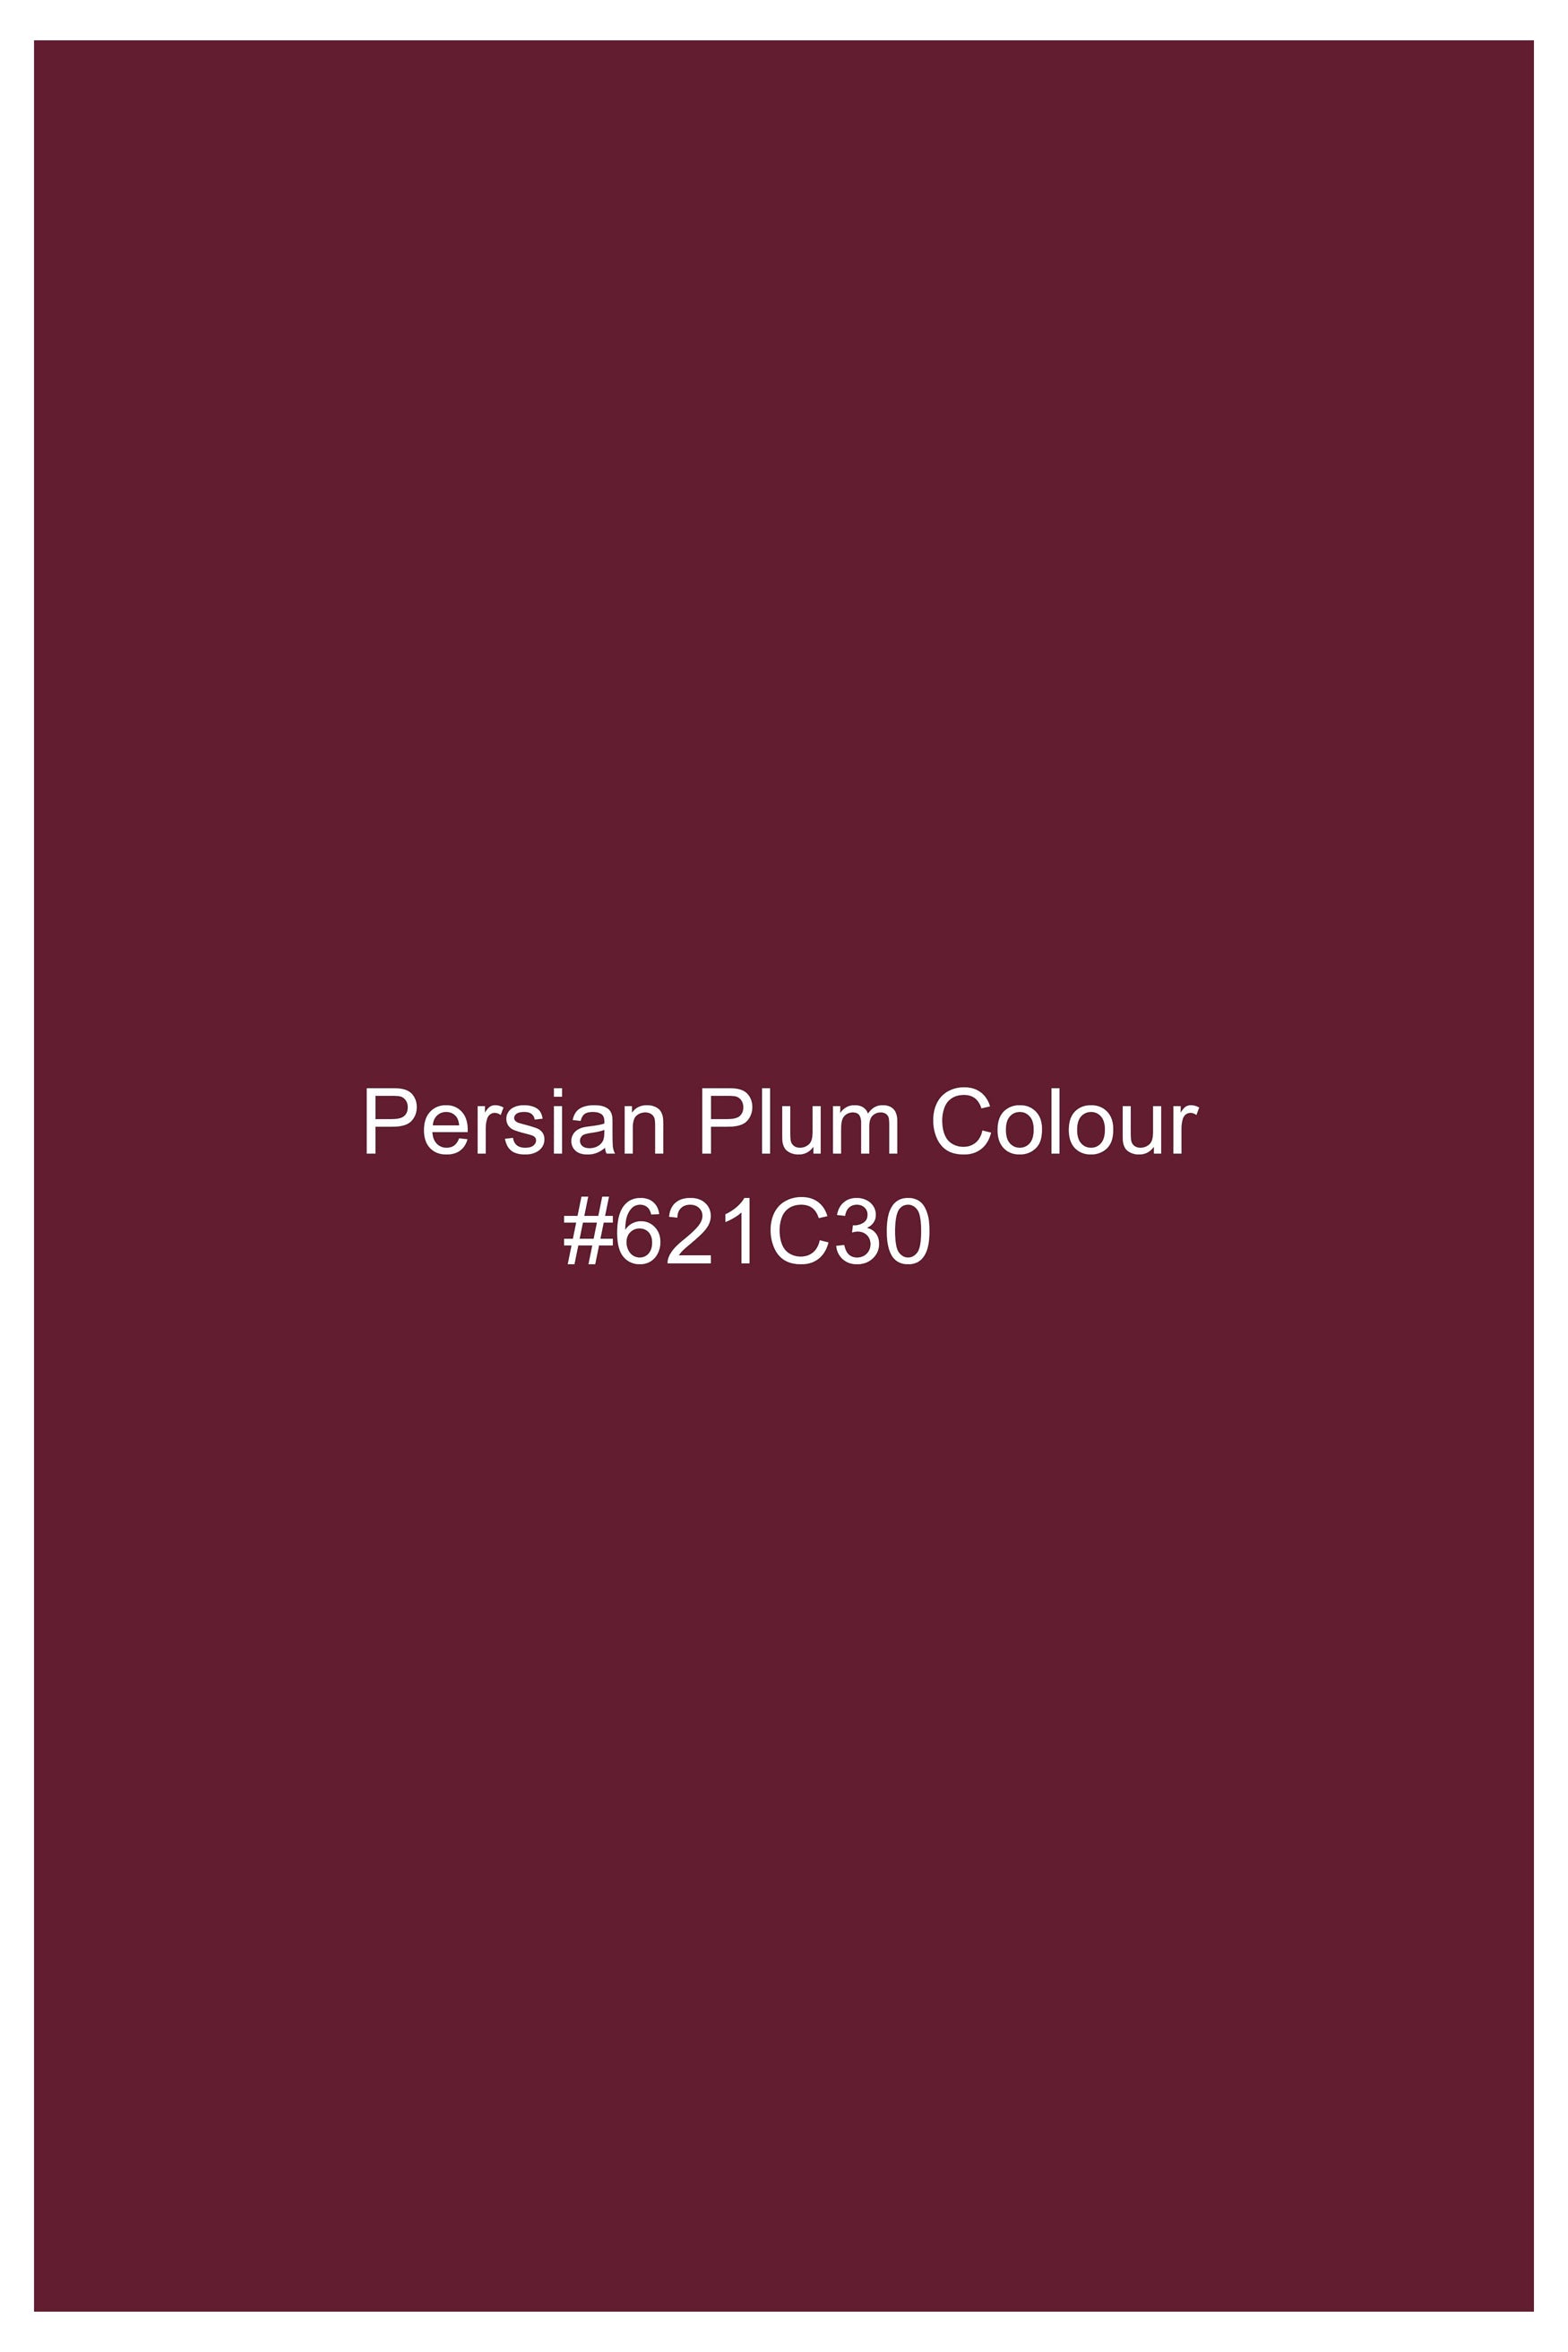 Persian Plum Vertical Kutch Work Patches with Mirror Work Subtle Sheen Super Soft Premium Cotton Designer Kurta